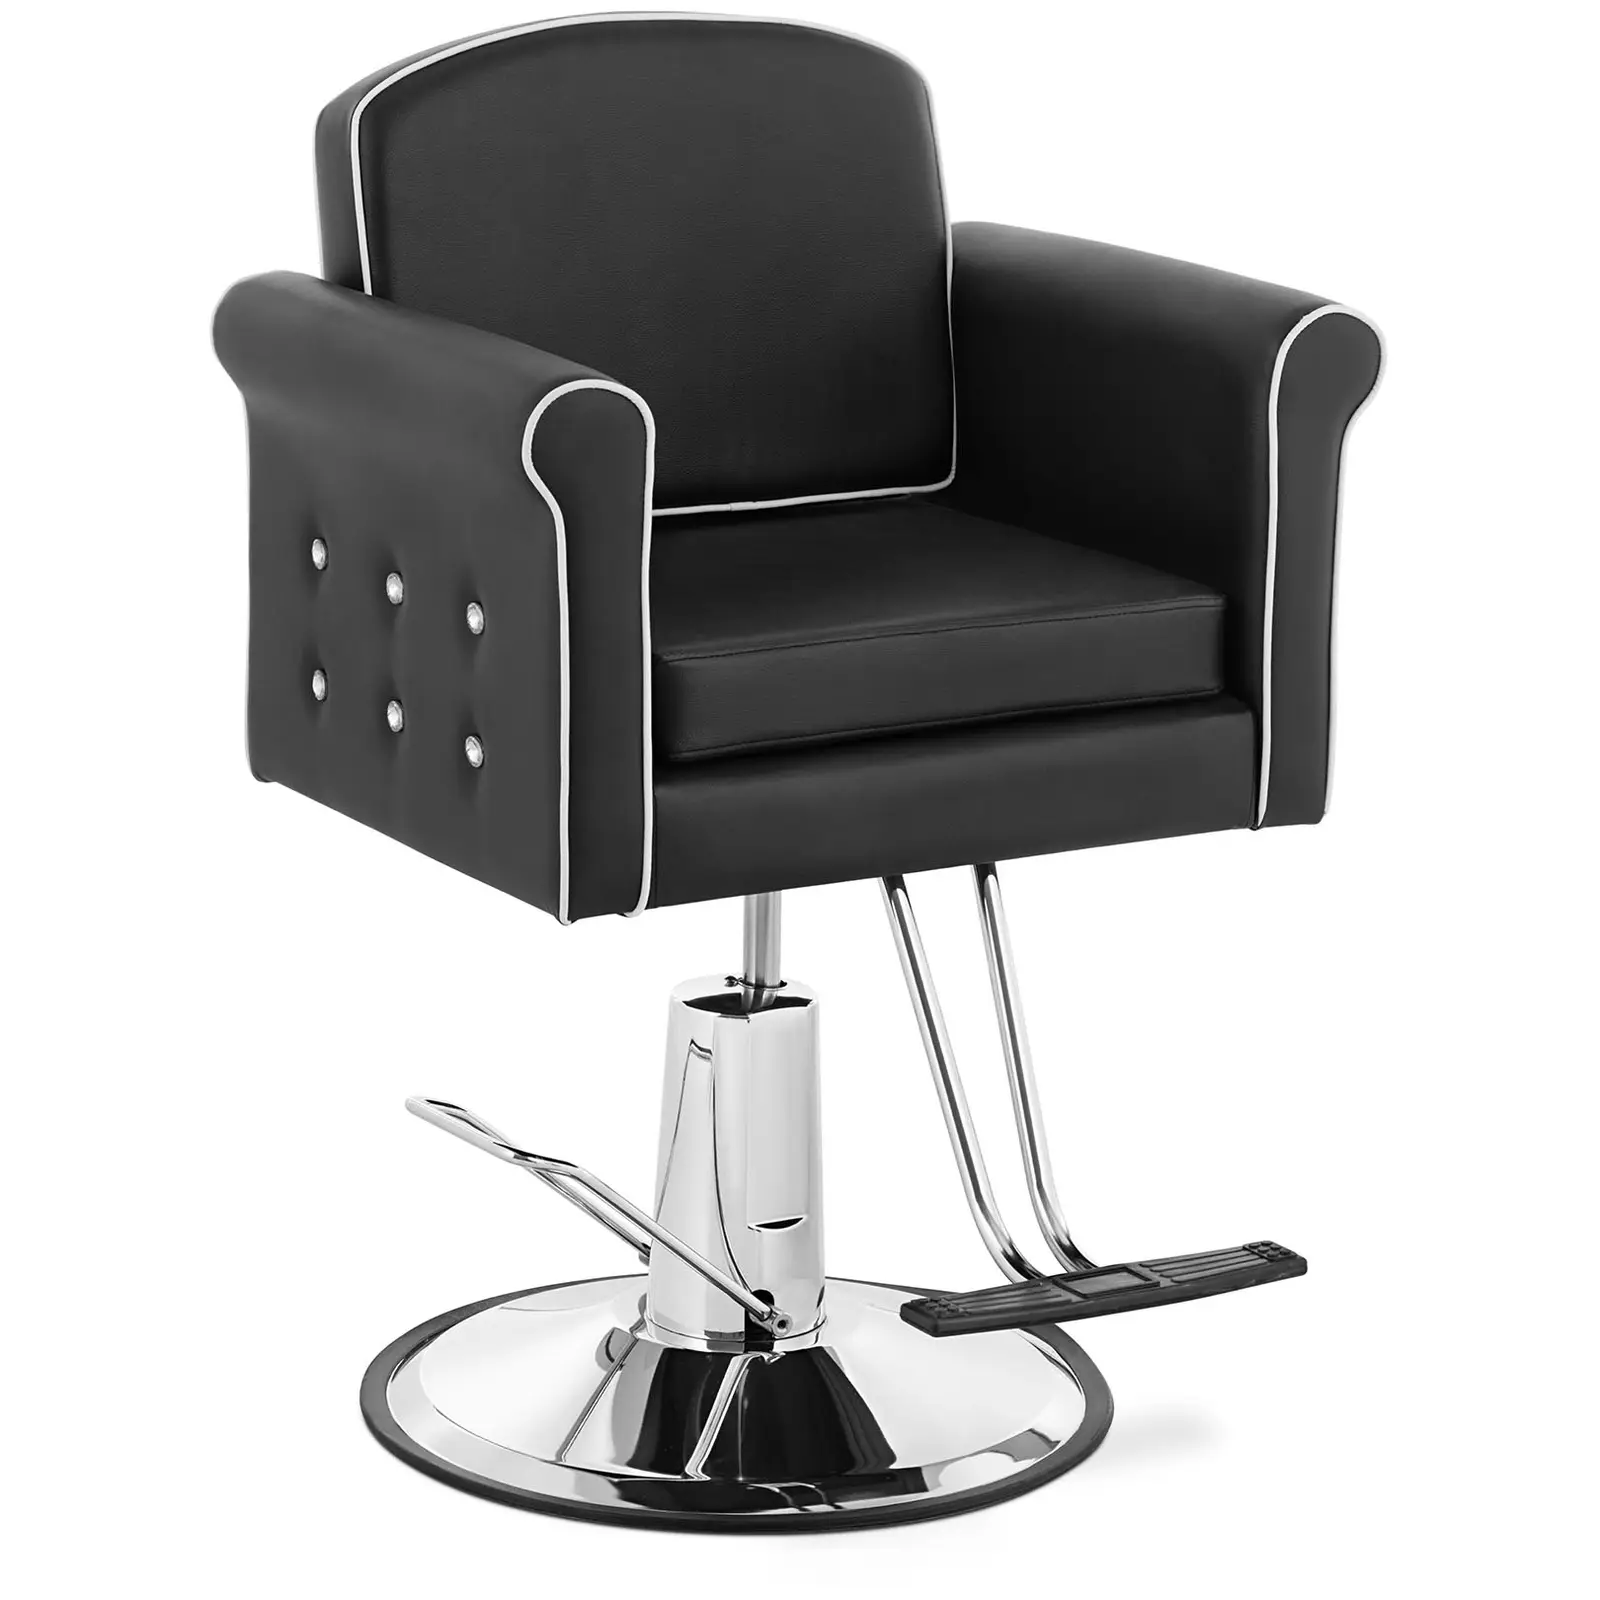 Grožio salono kėdė su kojų atrama - 520 - 630 mm - 150 kg - juoda